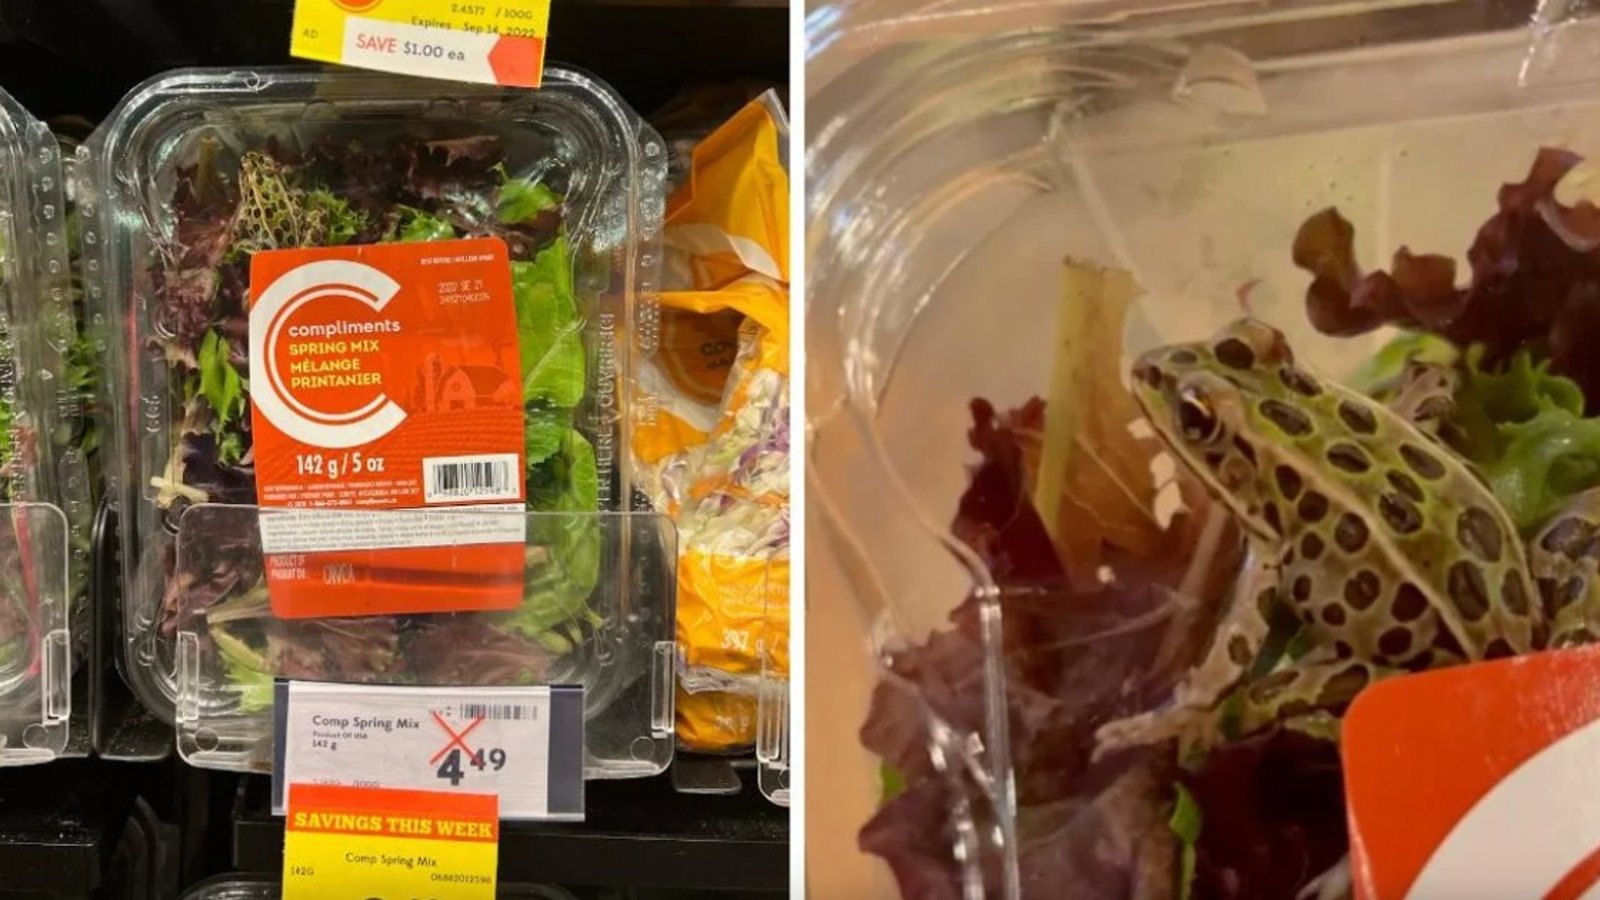 Une cliente d'une épicerie trouve une grenouille vivante dans un emballage de salade 